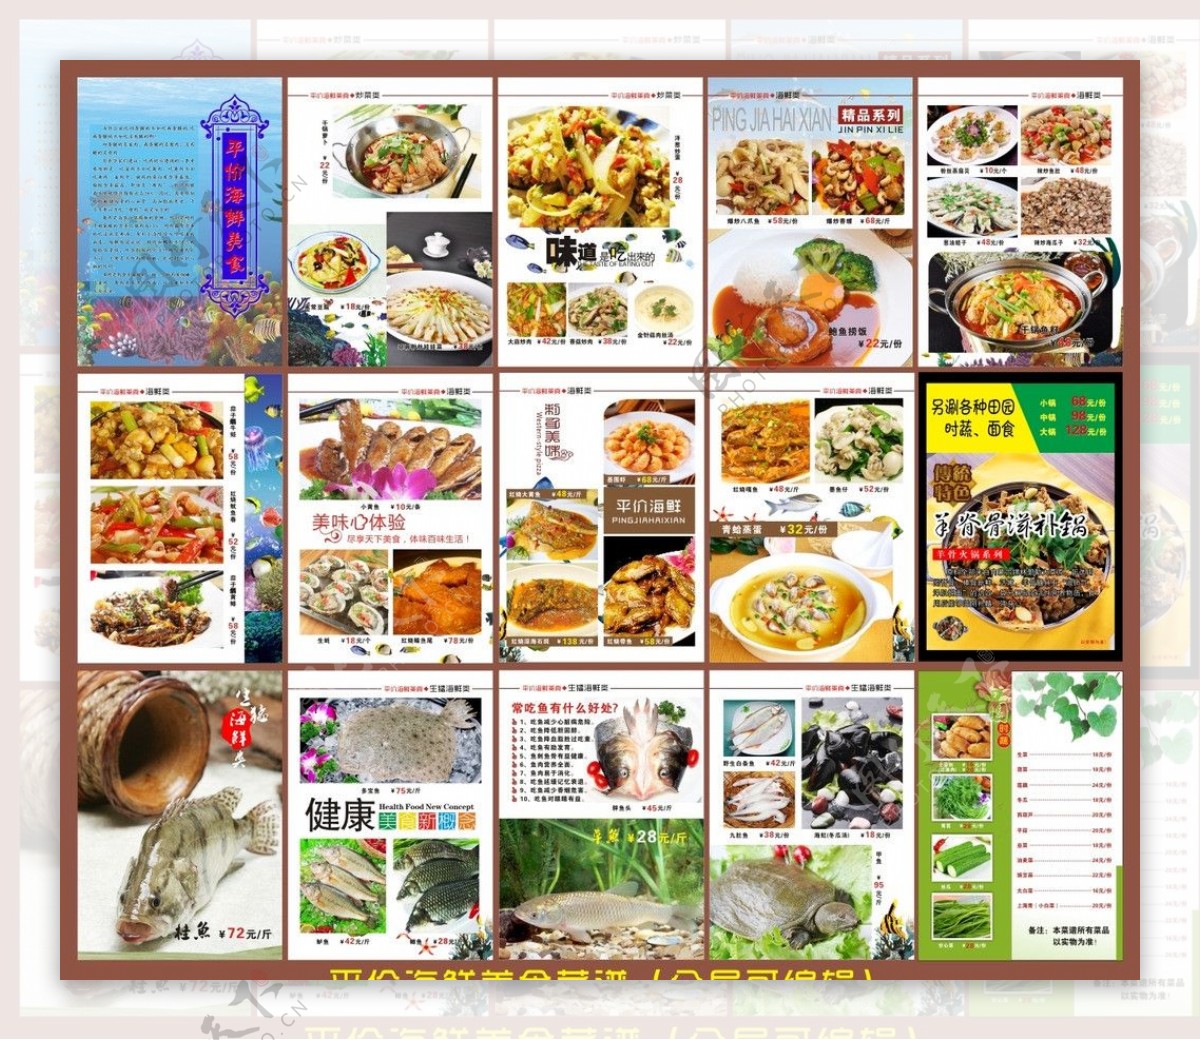 平价海鲜美食菜谱图片